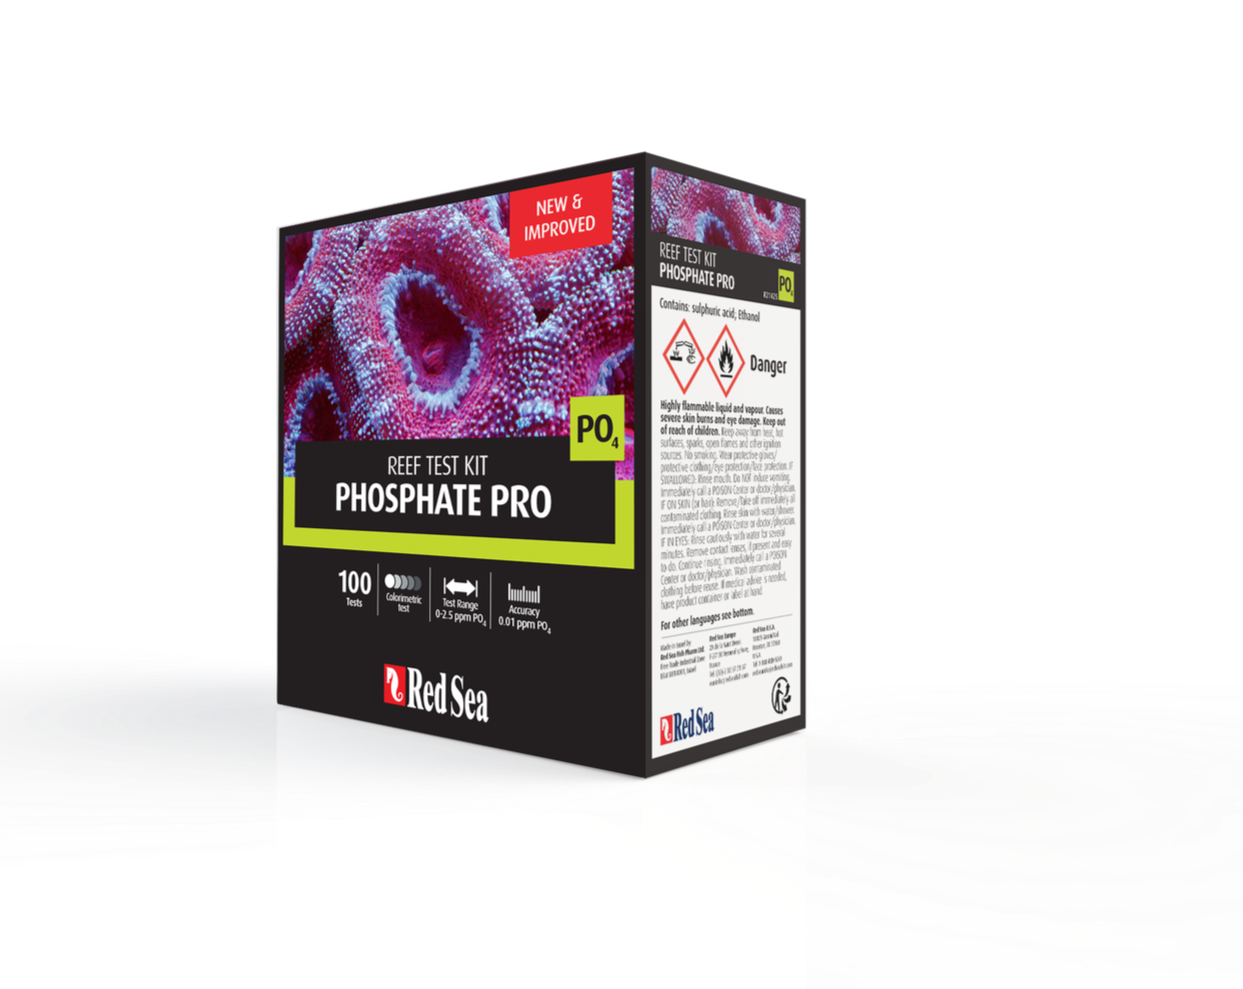 Red sea Phosphate pro test kit